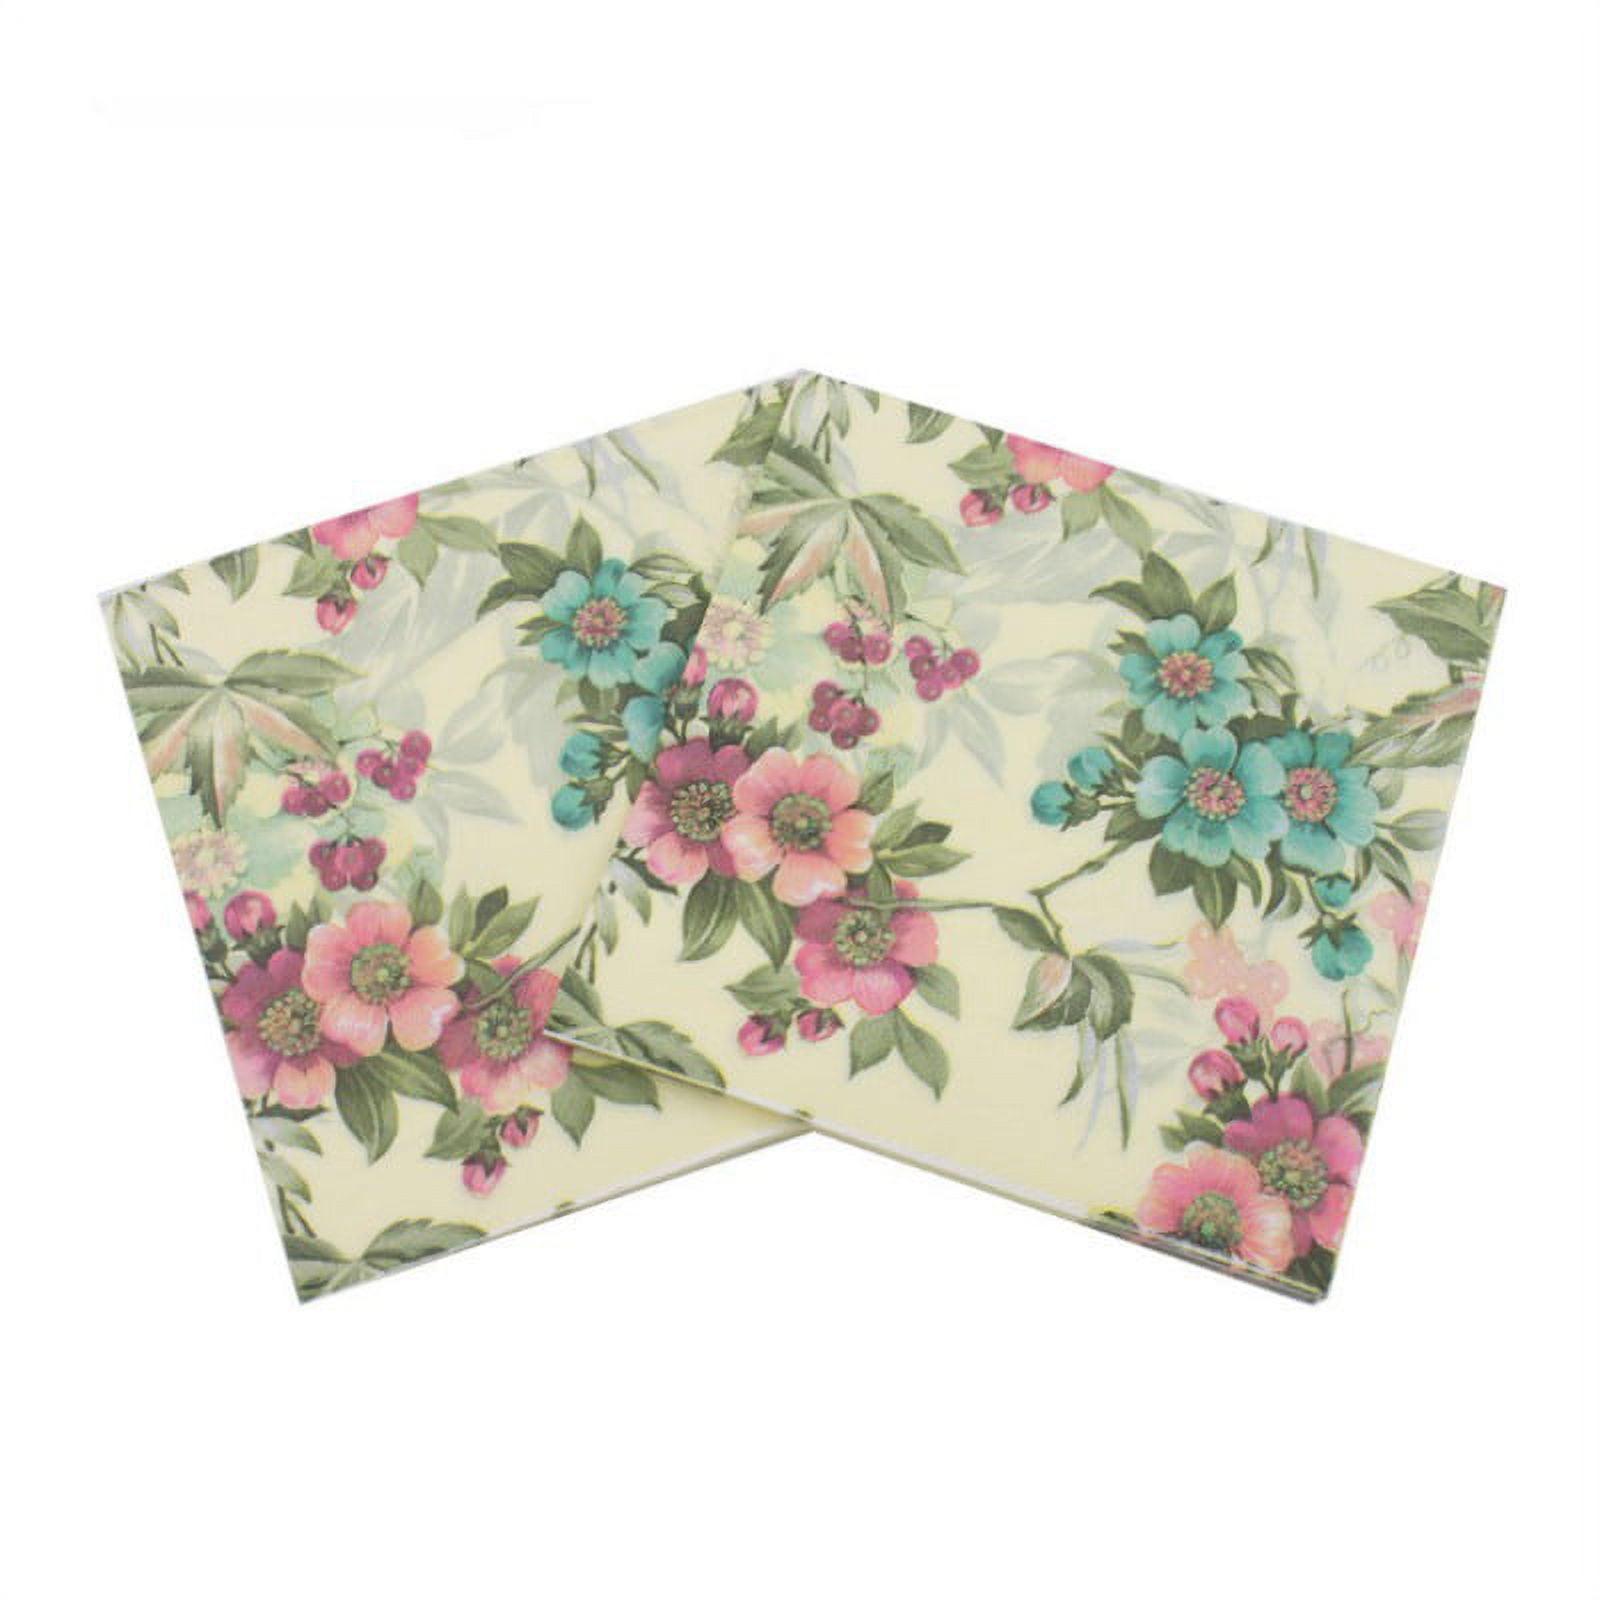 100-Pack Decorative Napkins, Floral Print Disposable Paper Party ...